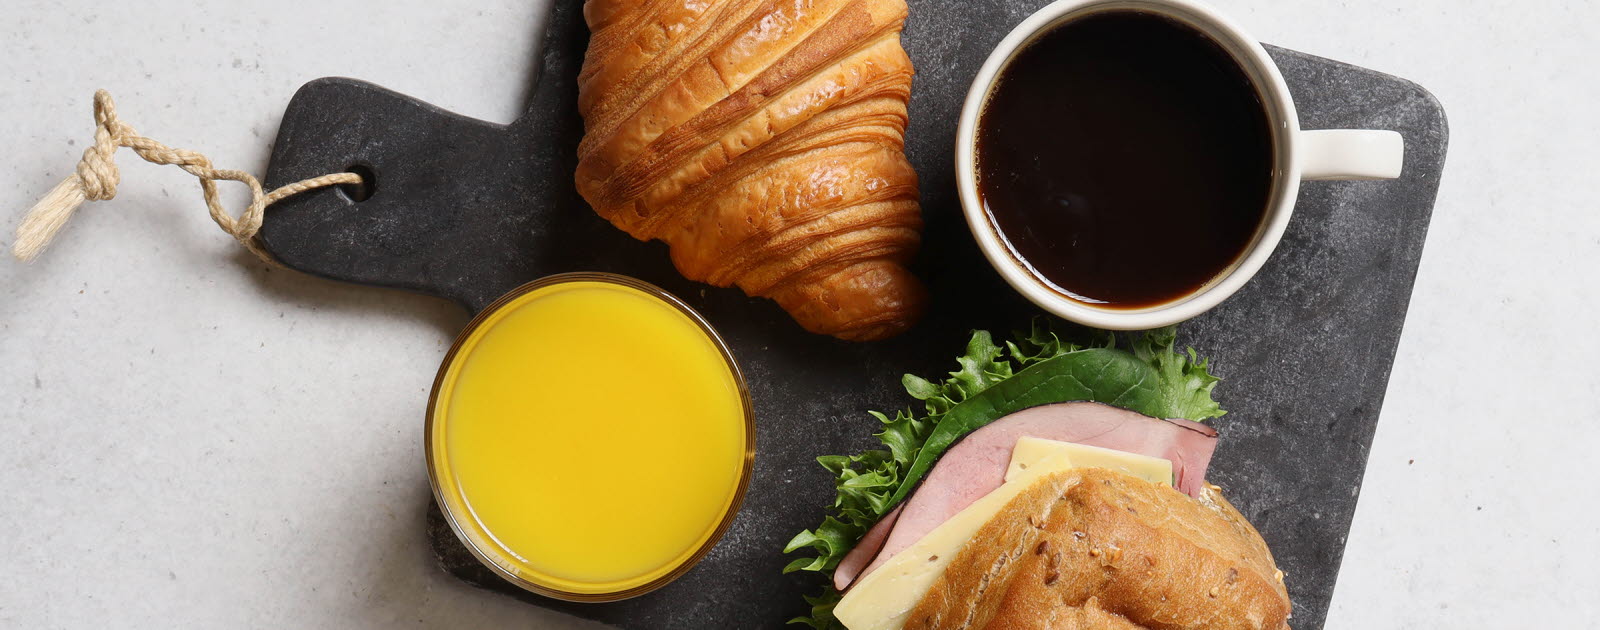 Grå marmorbricka med en ost- och skinkfralla, en croissant, en apelsinjuice och en svart kaffe.